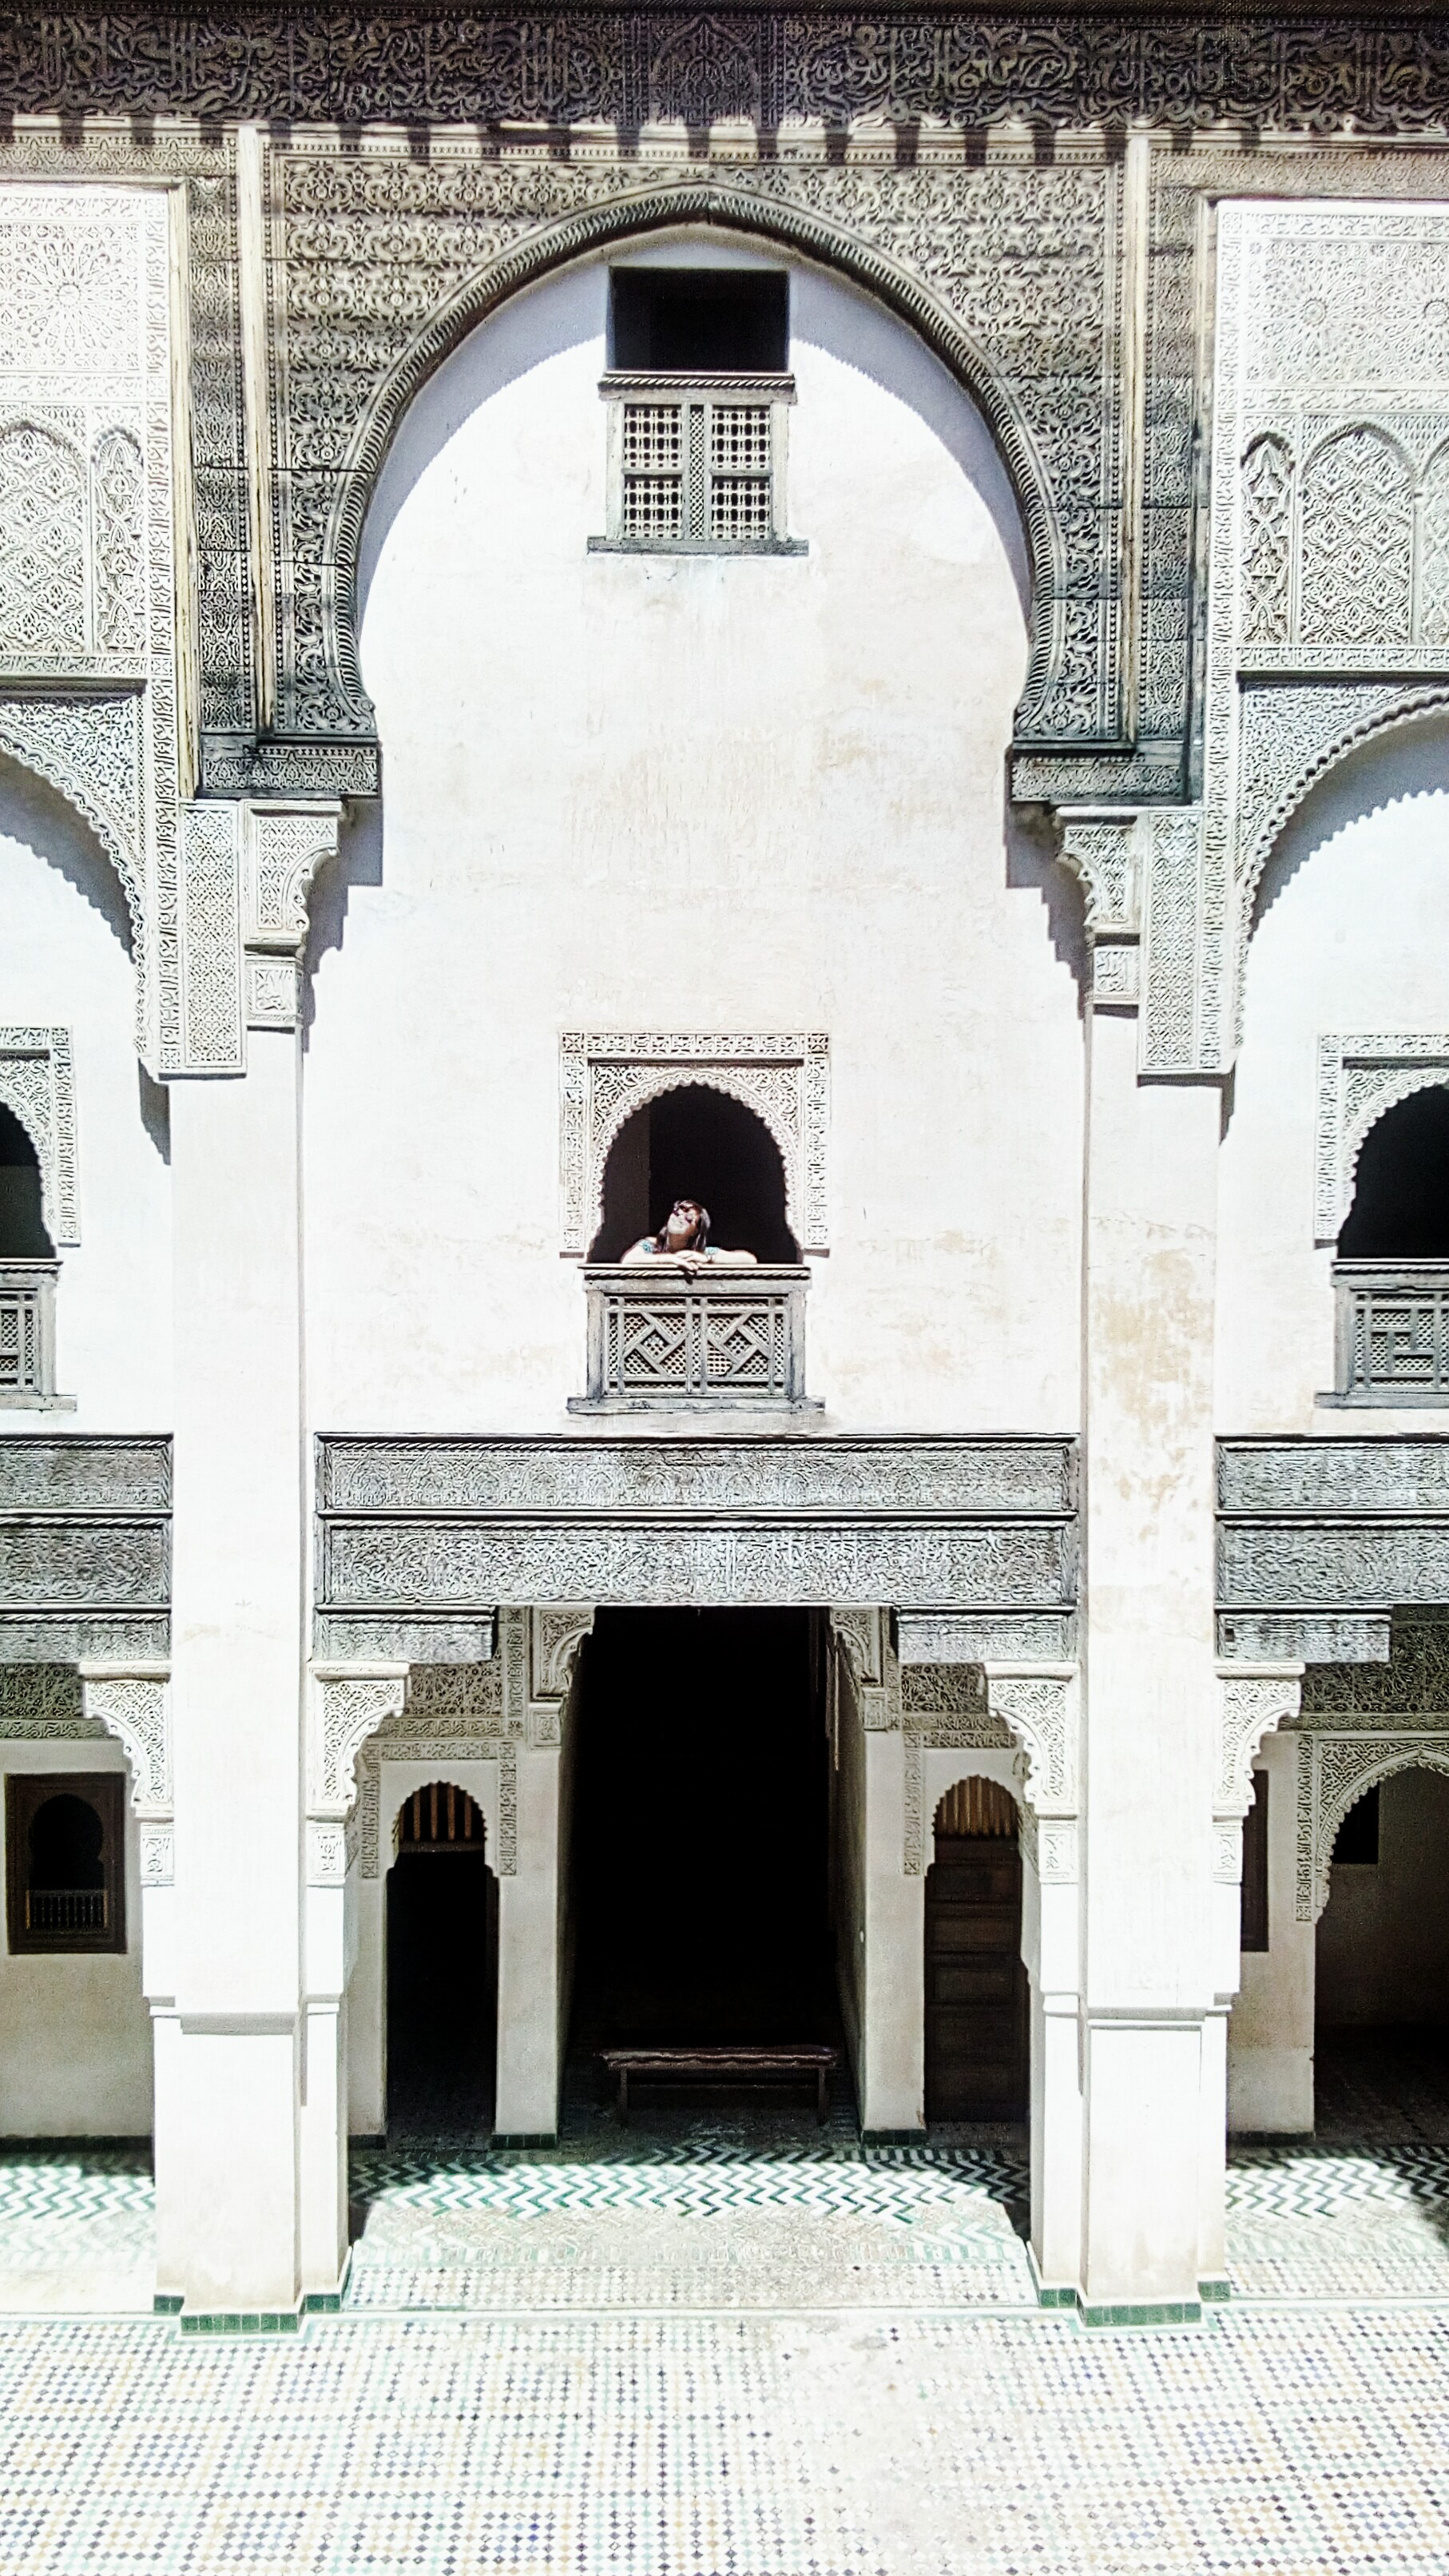 Sur l'image on voit une femme à l'une des fenêtres de la médersa Bou-Inania